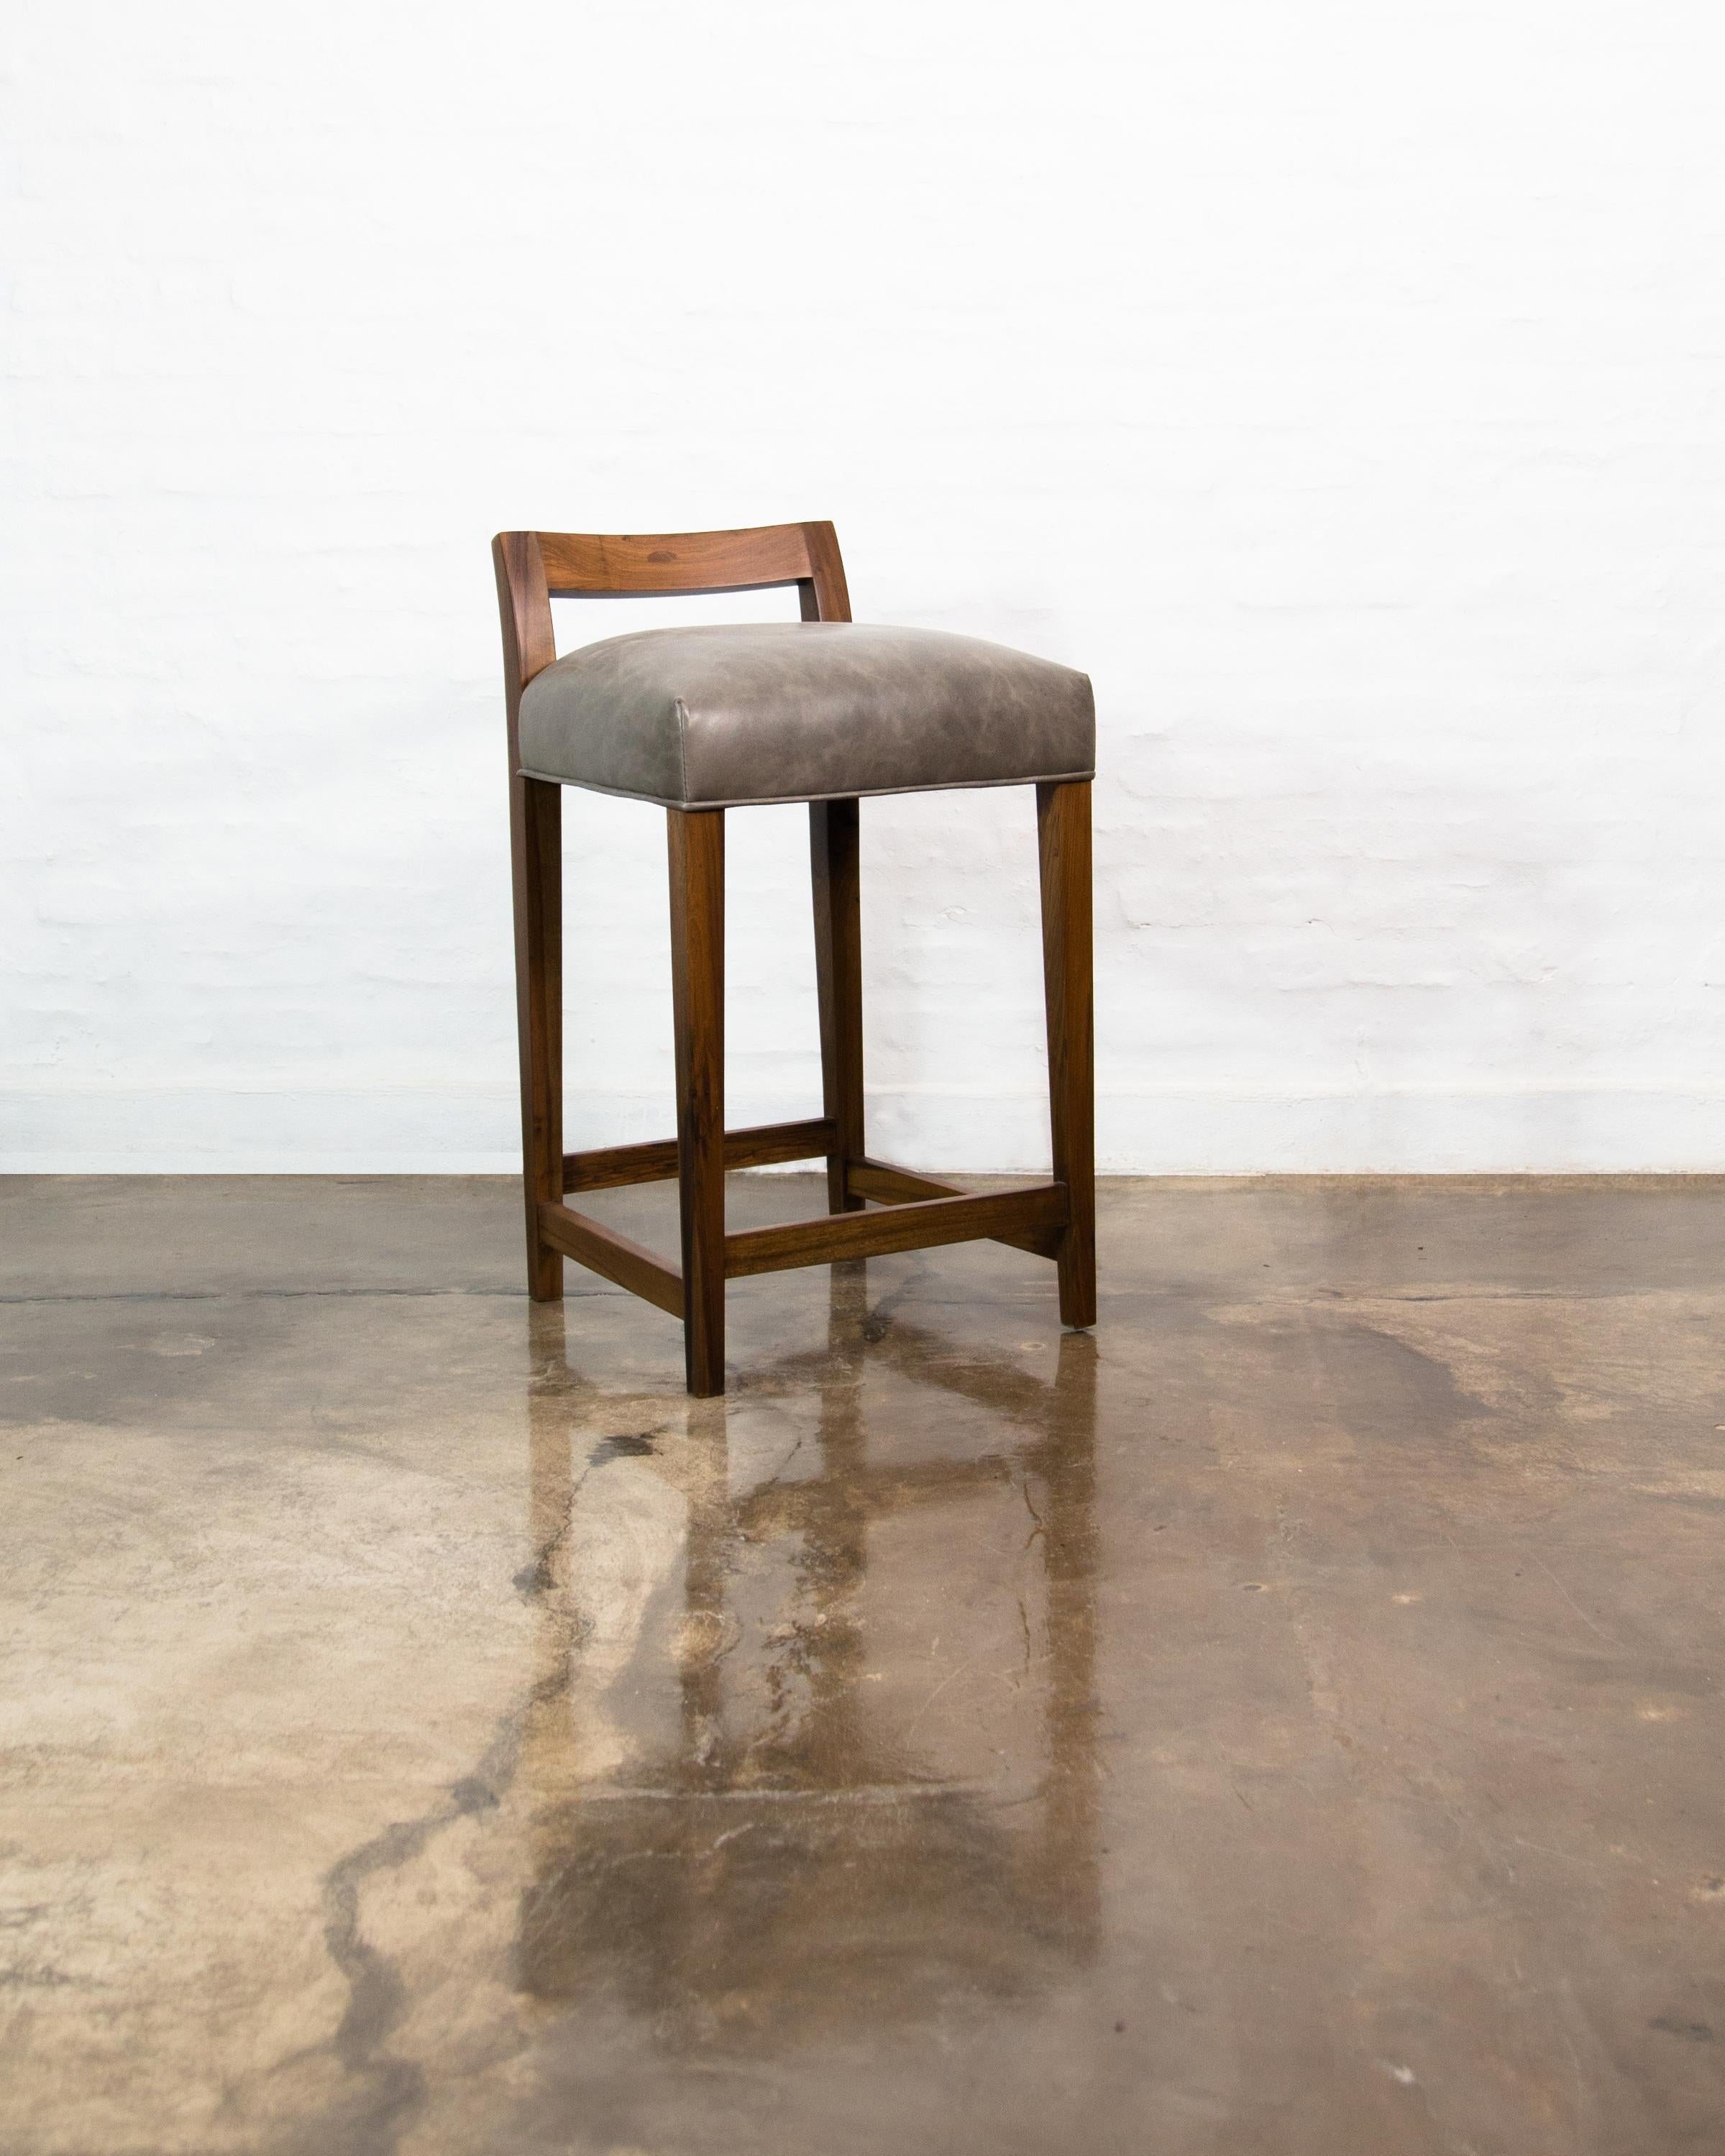 Le tabouret de comptoir Umberto est l'un des modèles de sièges originaux de Costantini. Il présente un dossier moderne, bas, en bois massif sculpté, avec une assise serrée, et un repose-pieds en bronze bruni en option. Disponible en plusieurs types